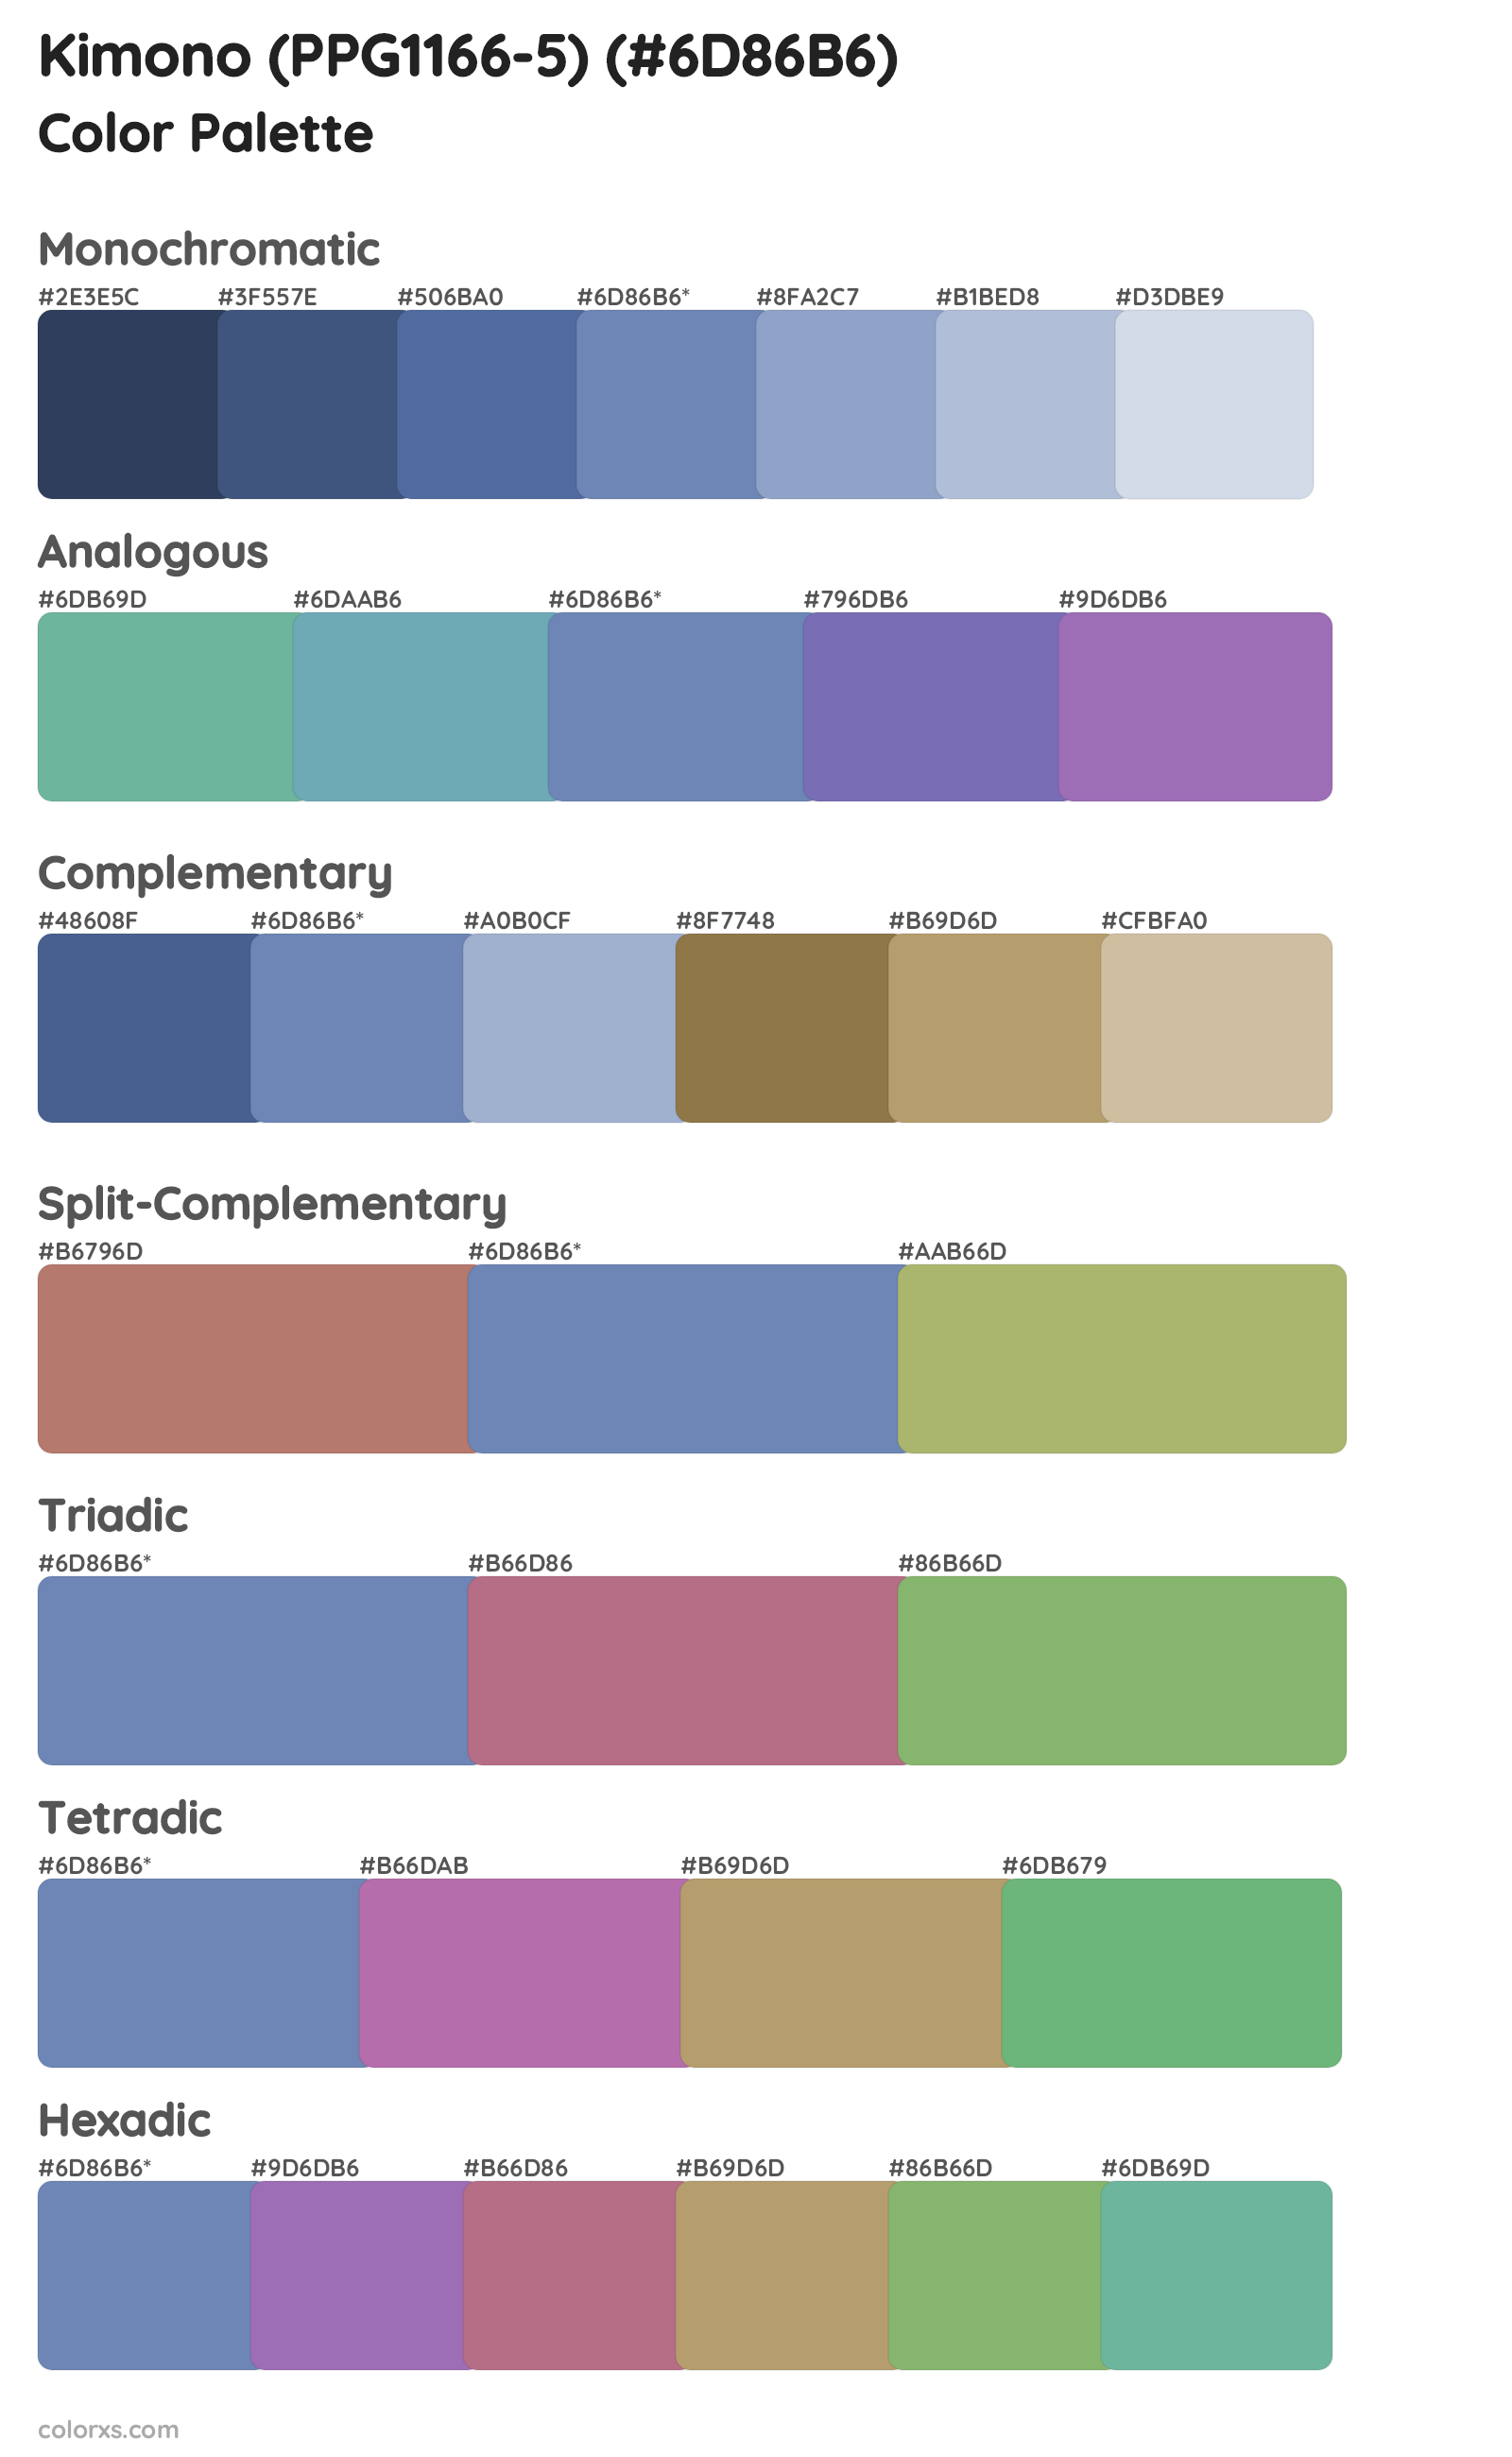 Kimono (PPG1166-5) Color Scheme Palettes